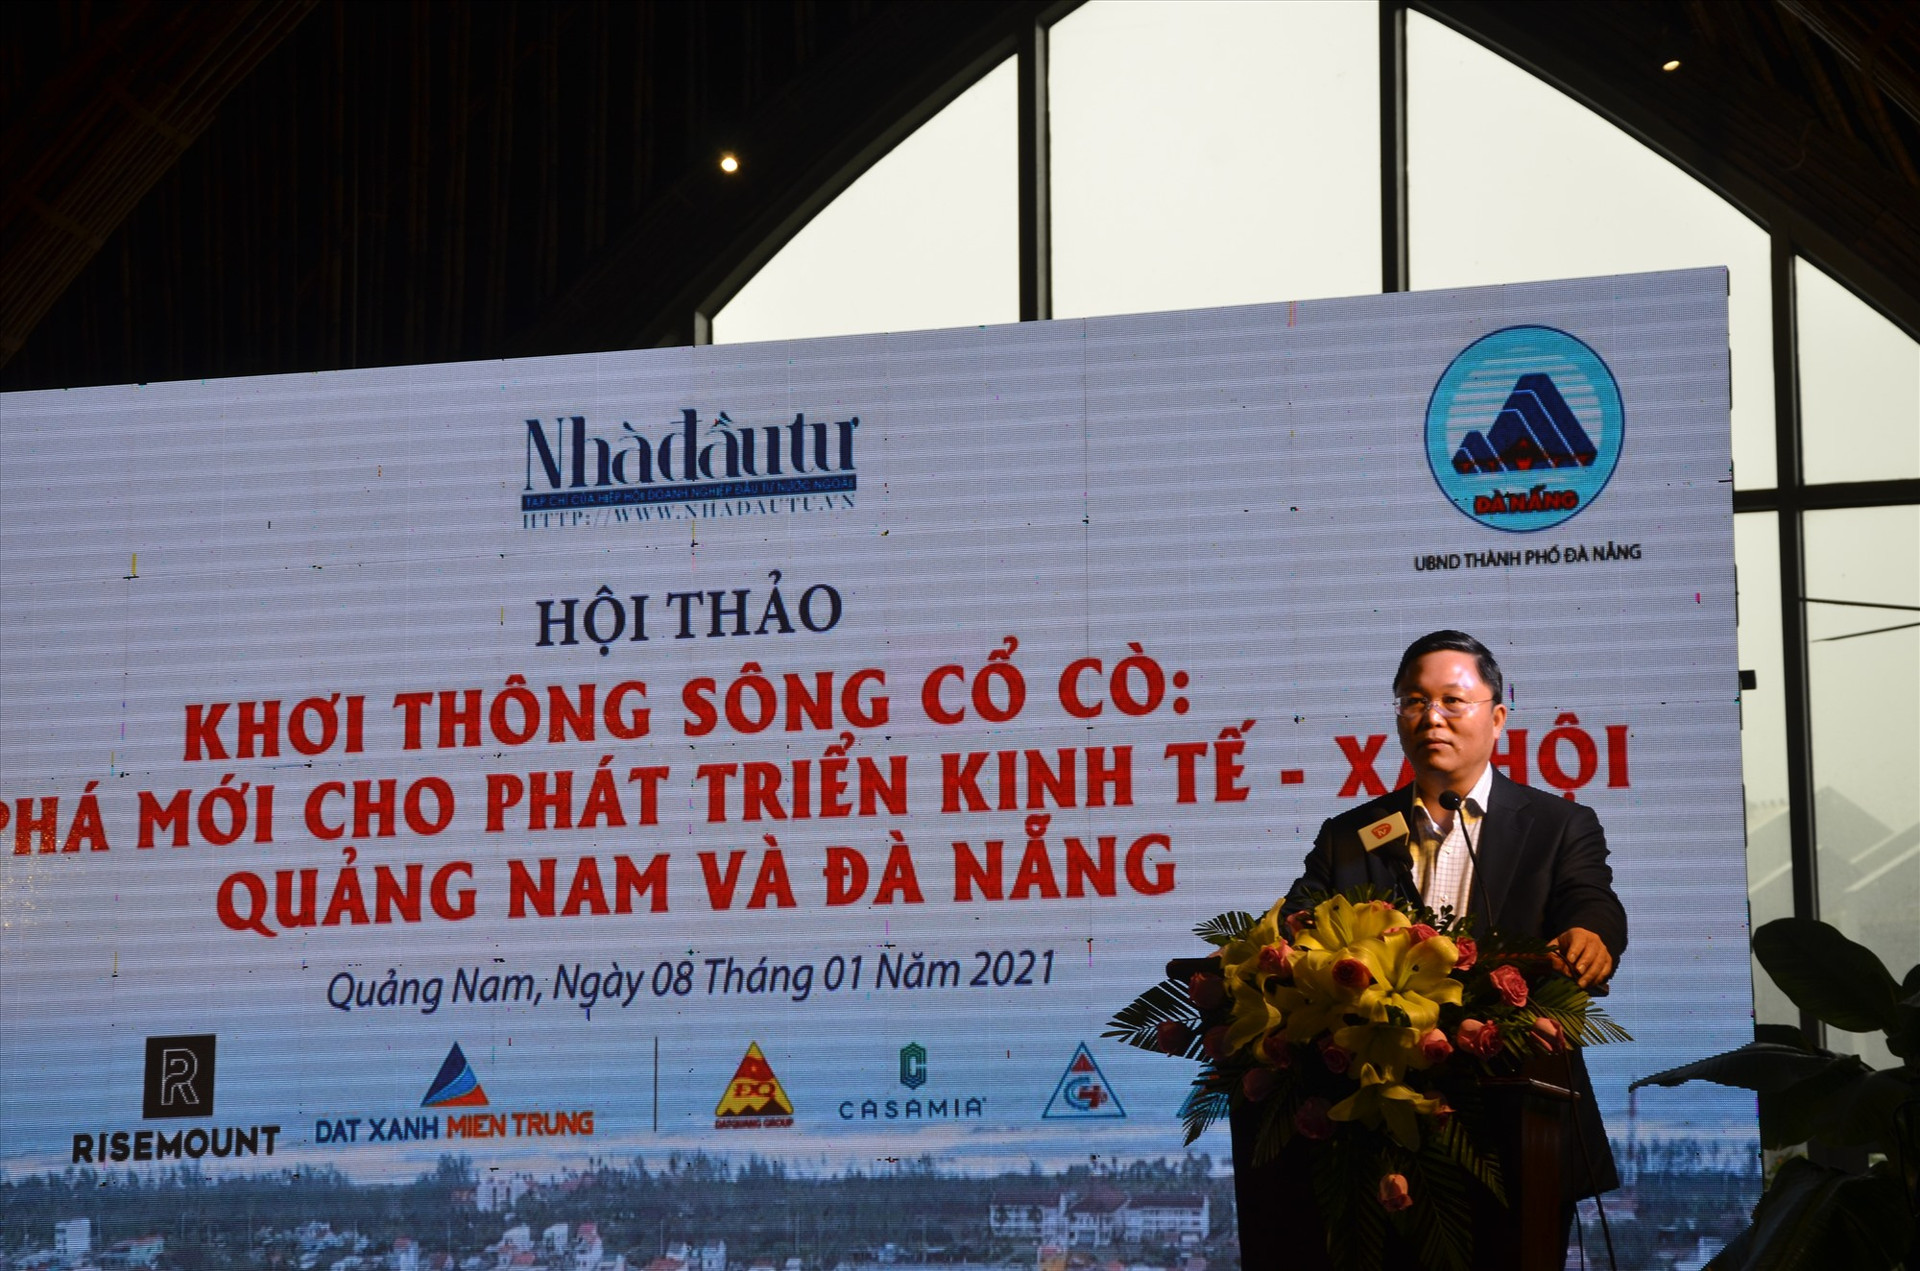 Chủ tịch UBND tỉnh Lê Trí Thanh phát biểu tại cuộc hội thảo về sông Cổ Cò diễn ra cuối năm 2020 tại Hội An. Ảnh: H.P